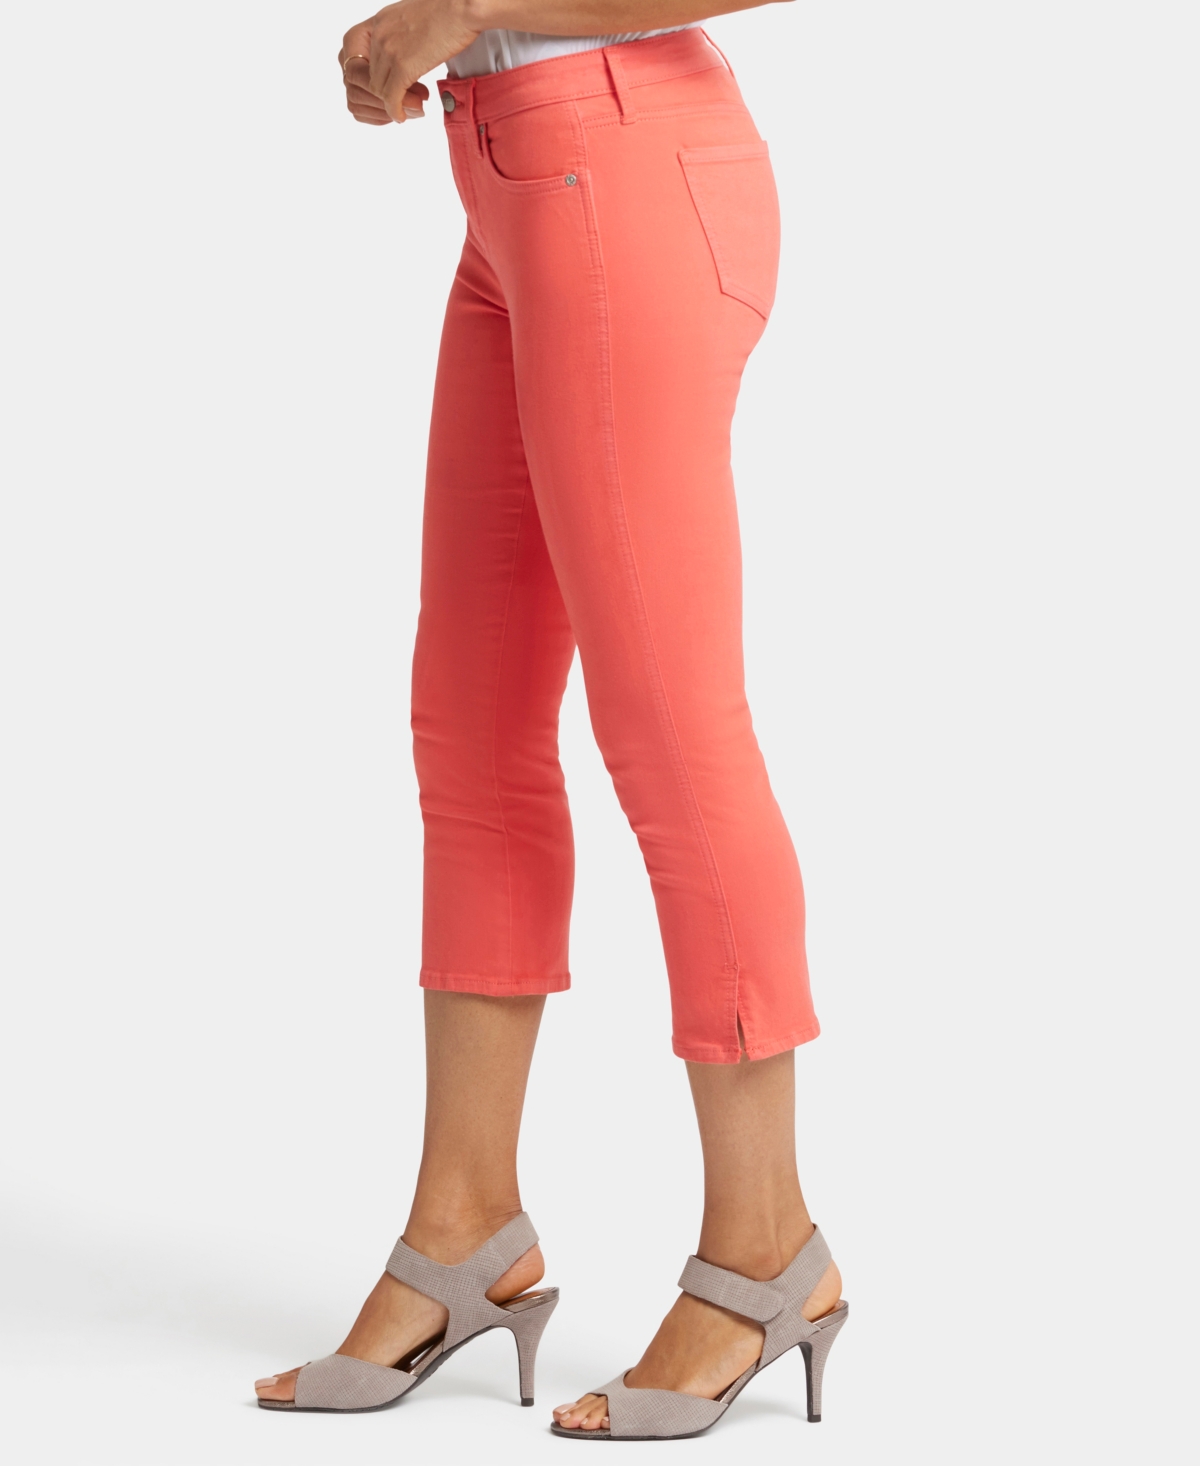 Shop Nydj Women's Chloe Capri Cropped Length Jeans In Fruit Punch